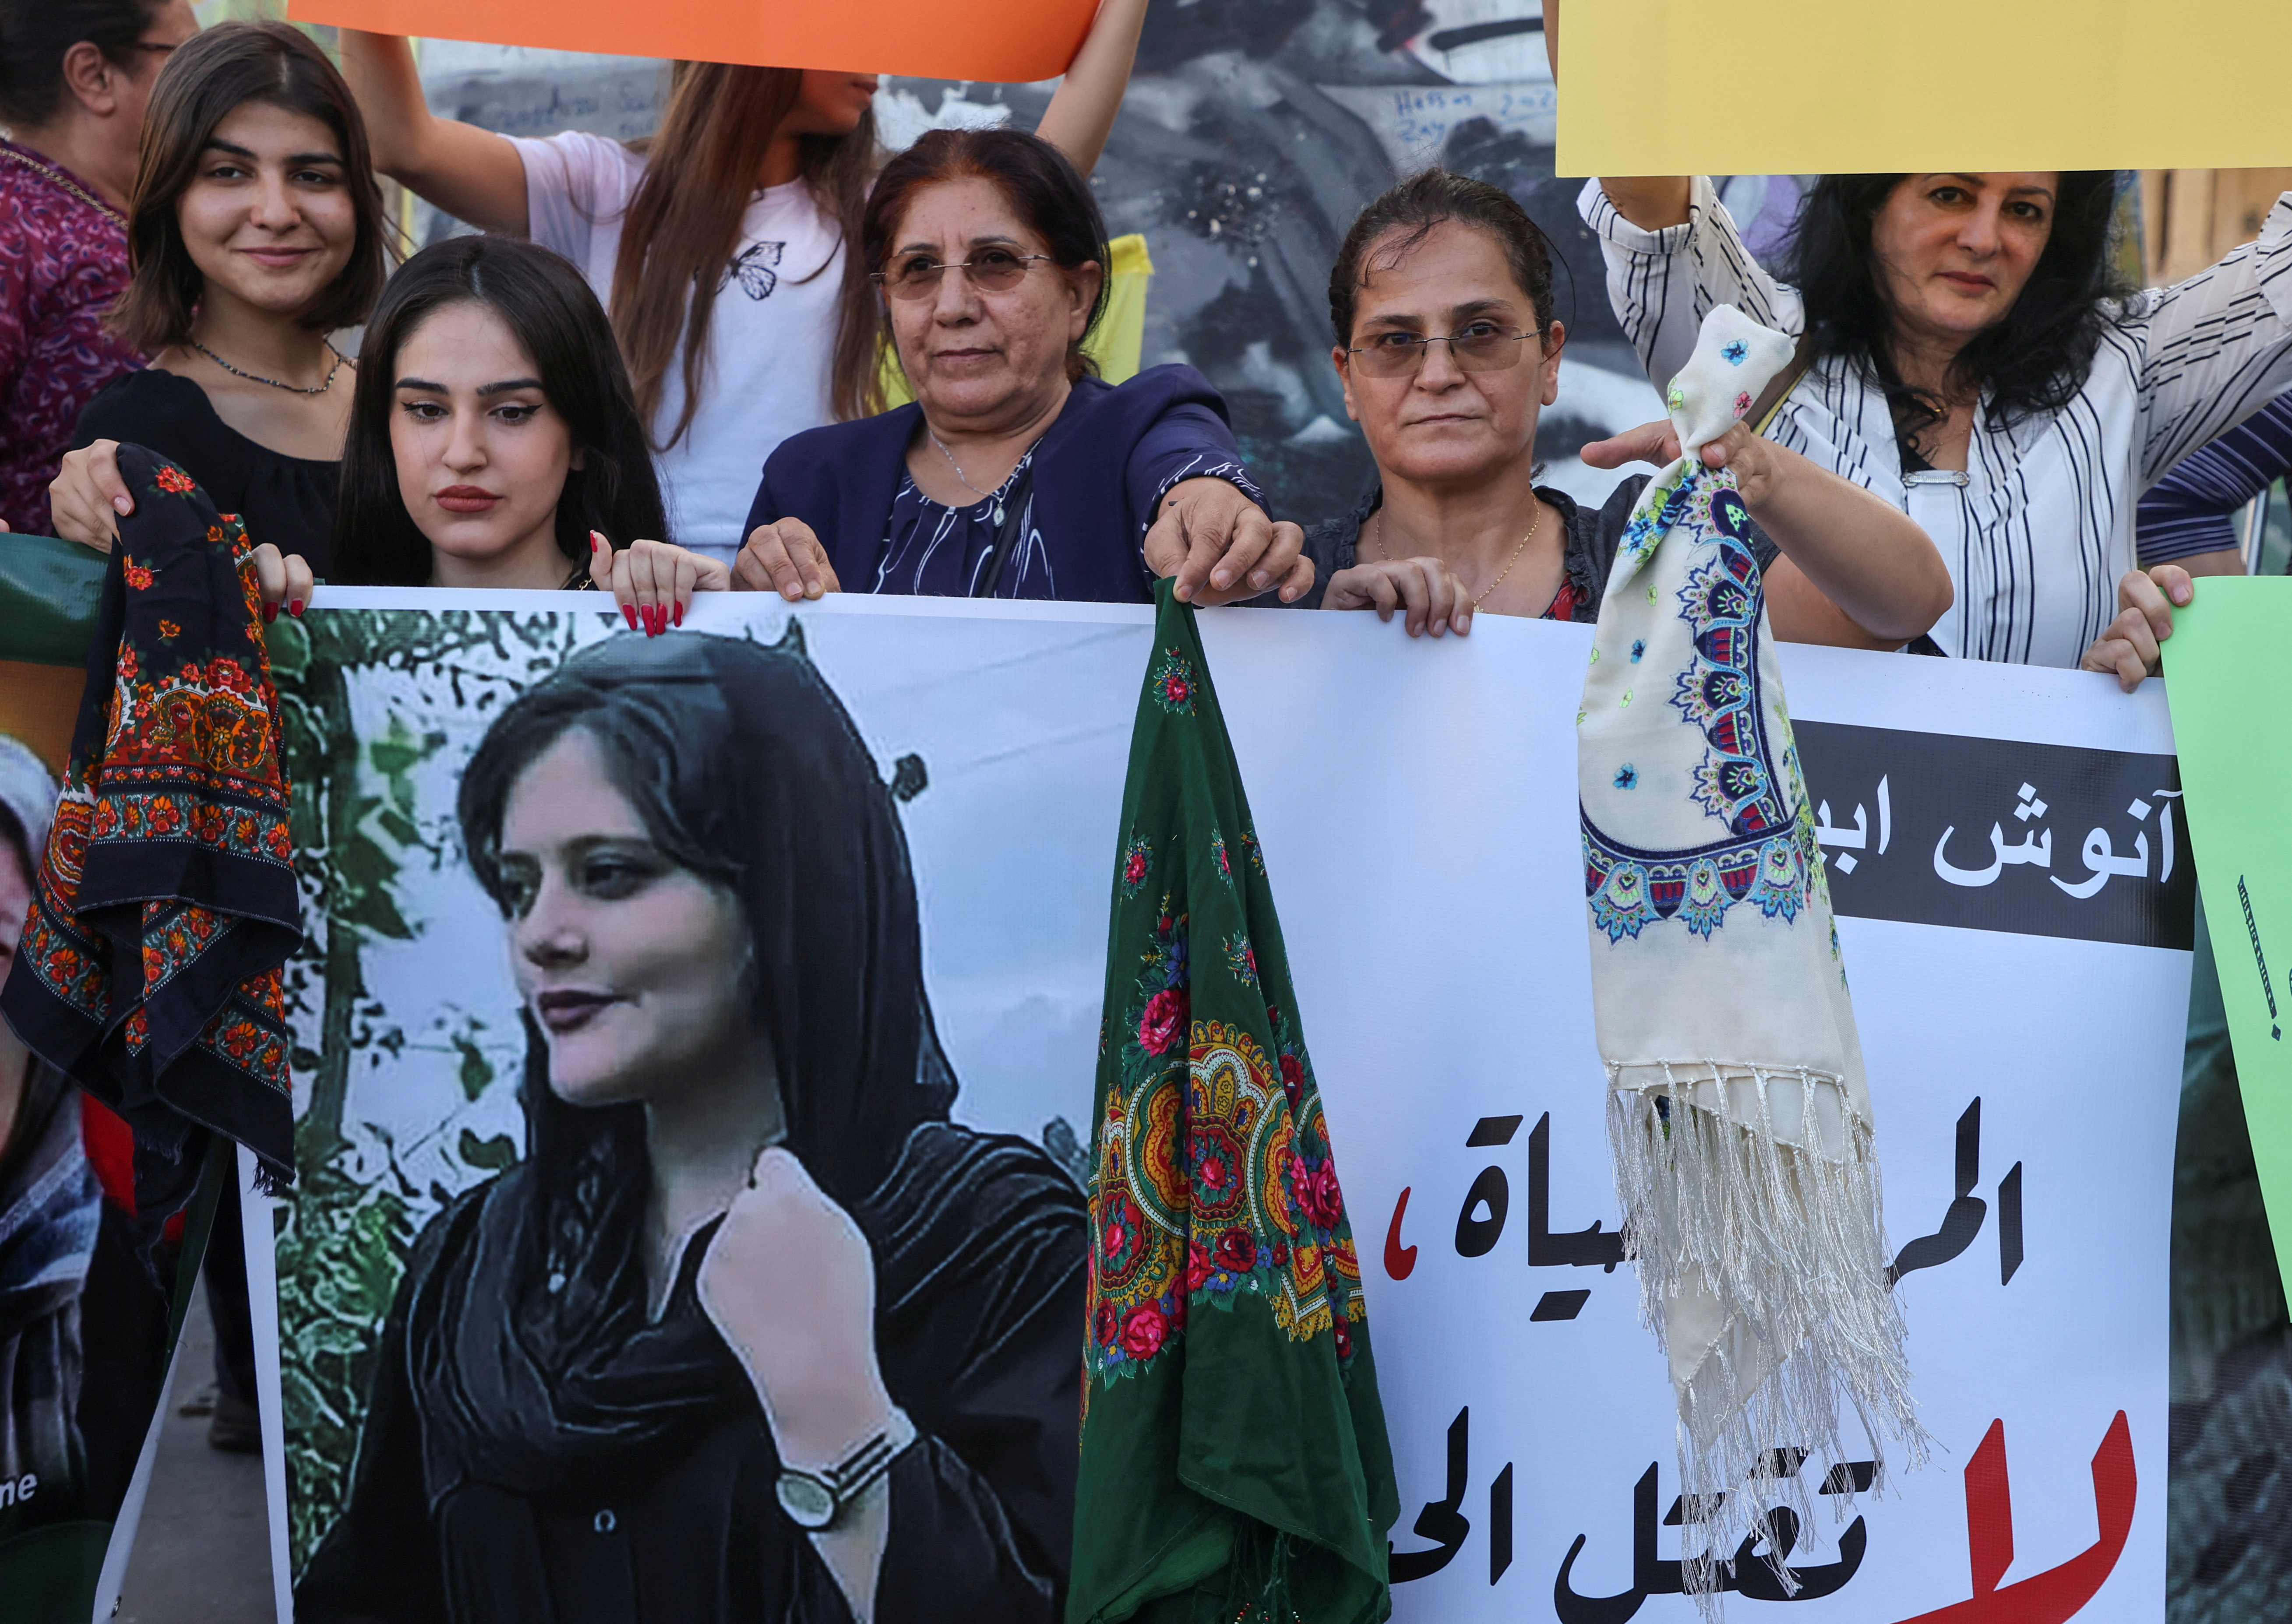 Las mujeres sostienen una foto de Mahsa Amini durante una protesta después de su muerte